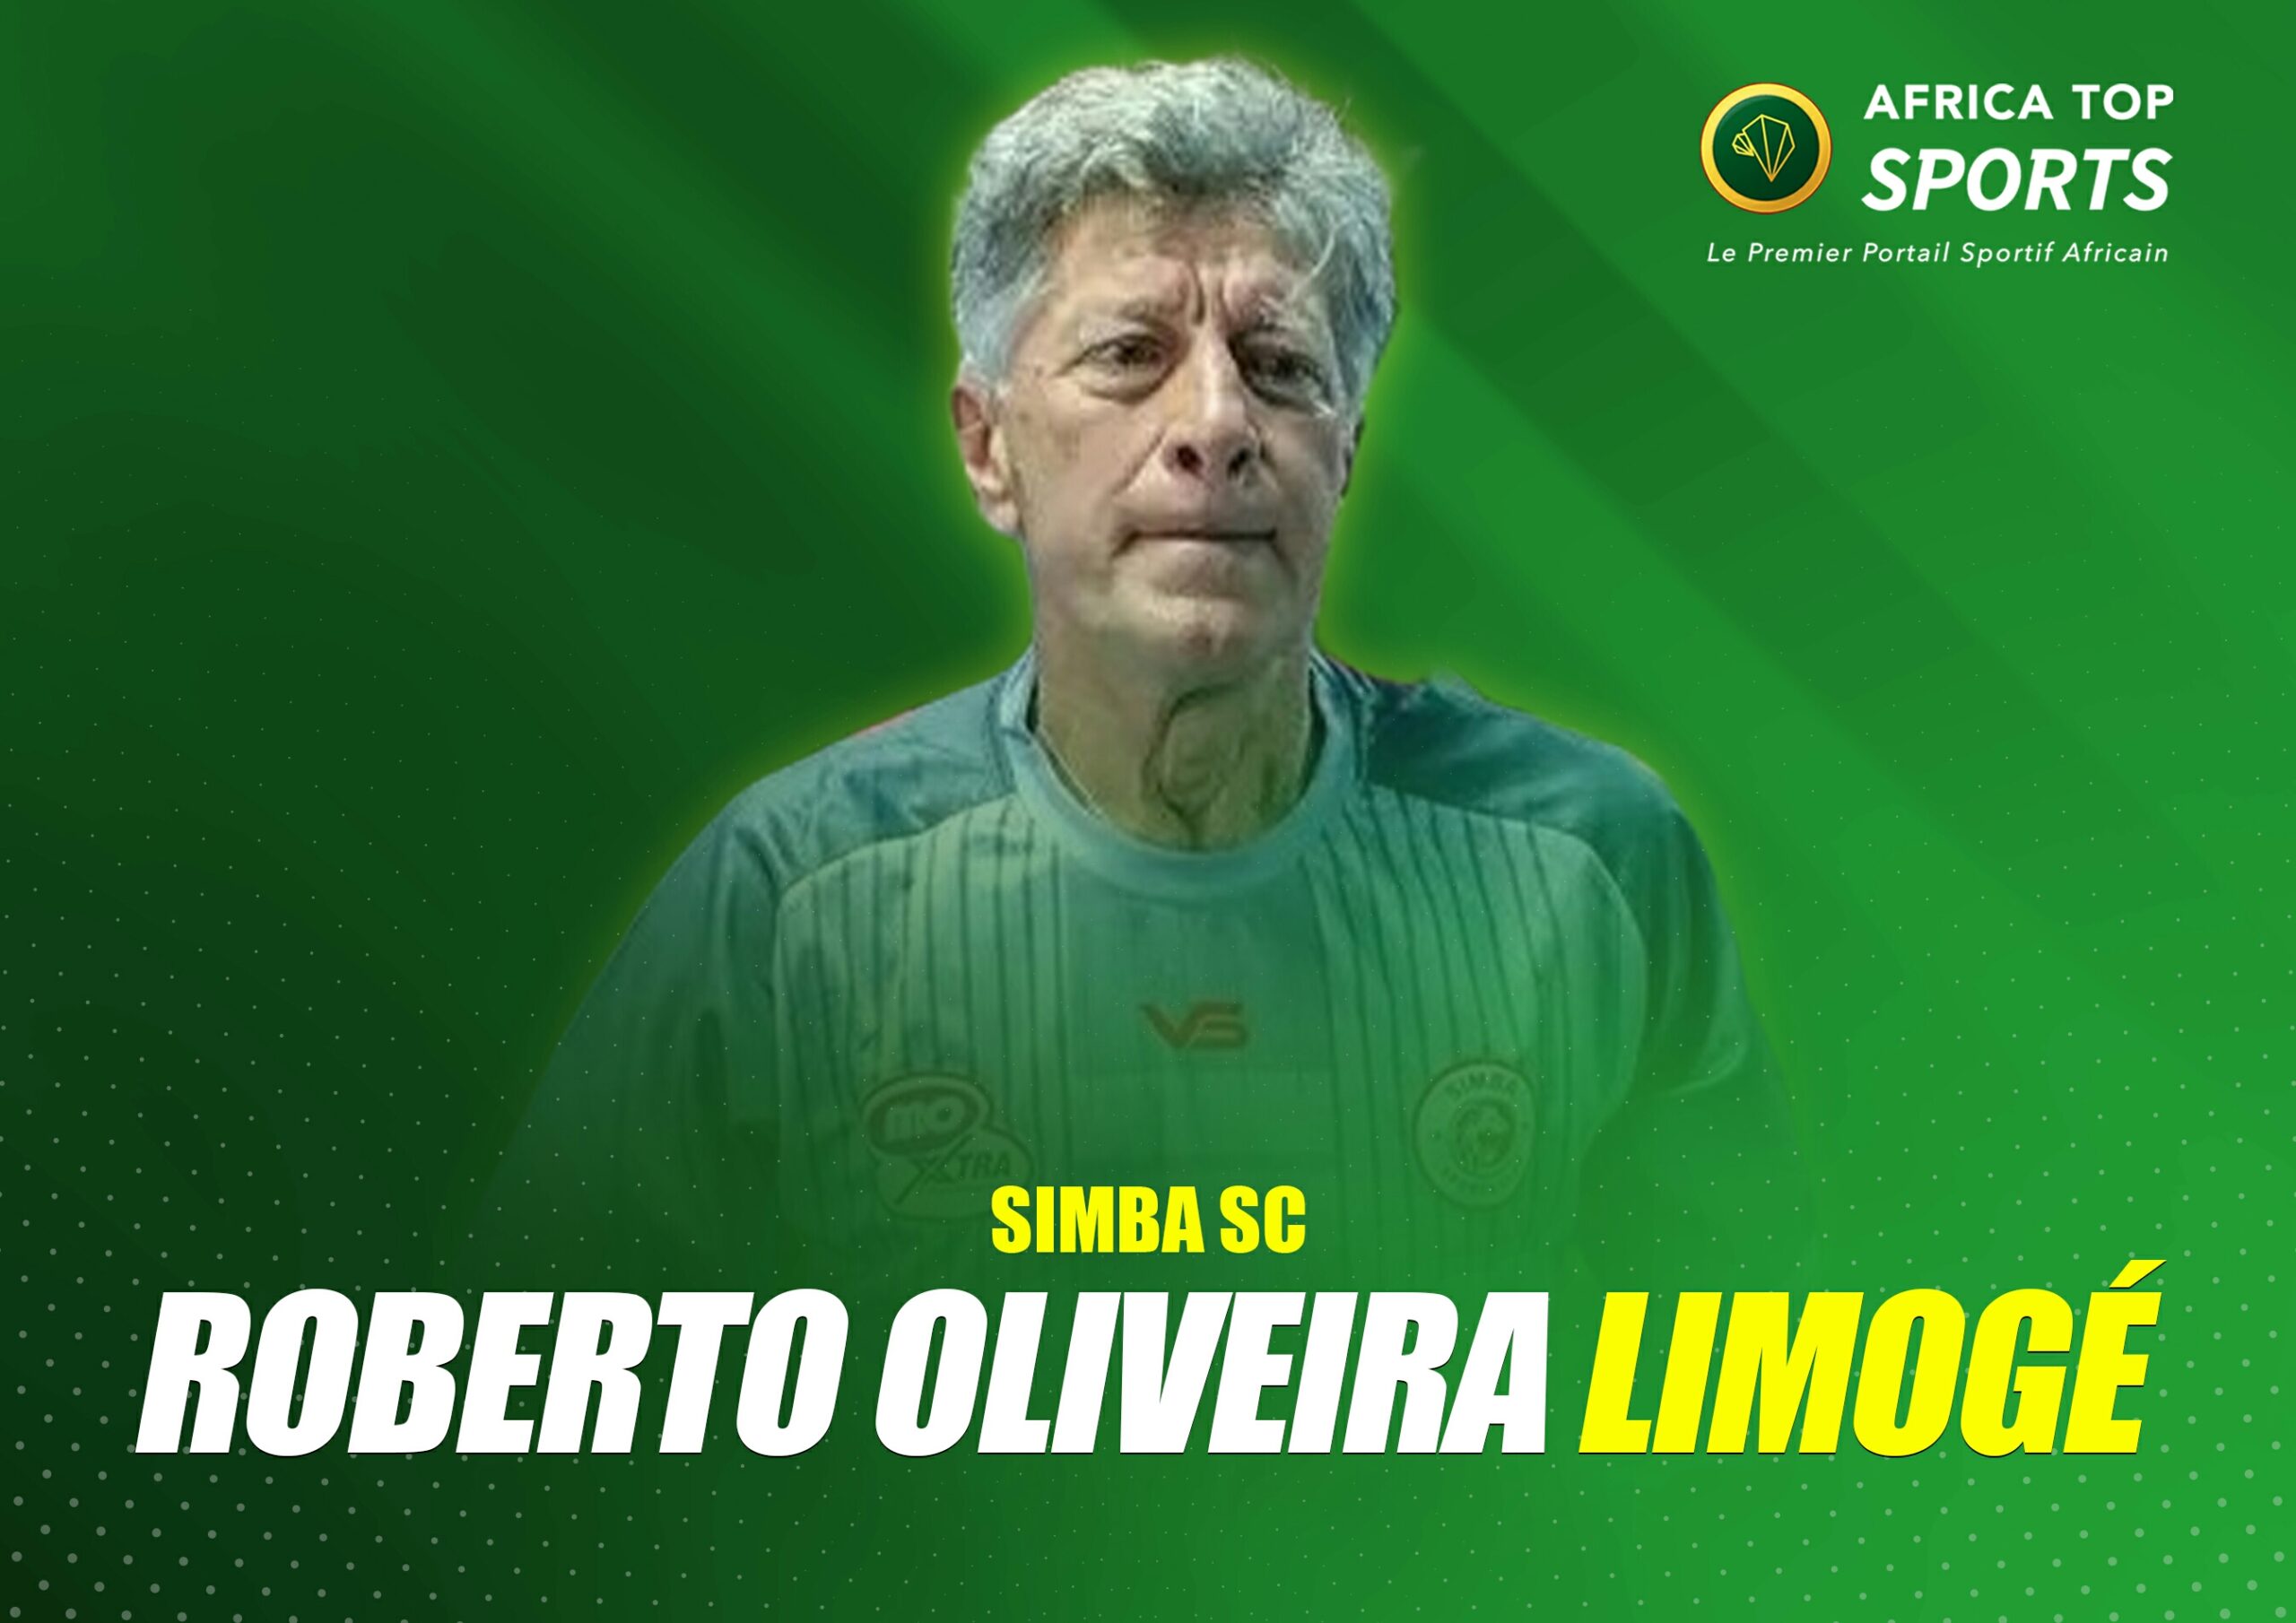 Simba SC limoge Roberto Oliveira !